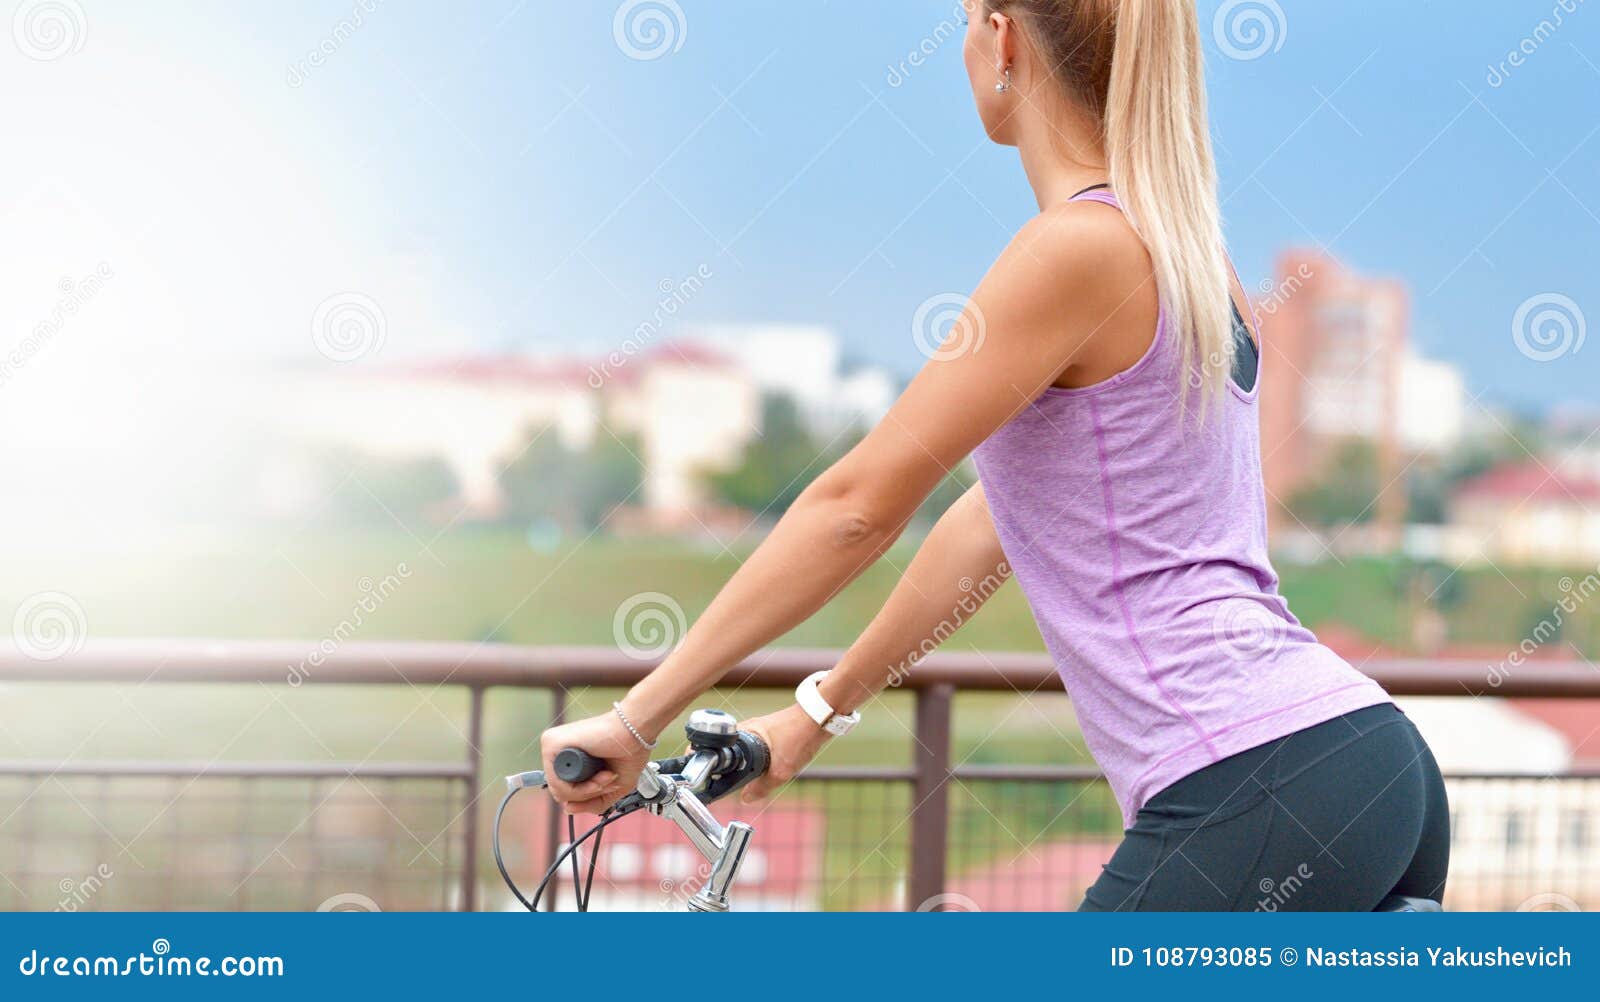 骑自行车性感美女图片壁纸-壁纸图片大全